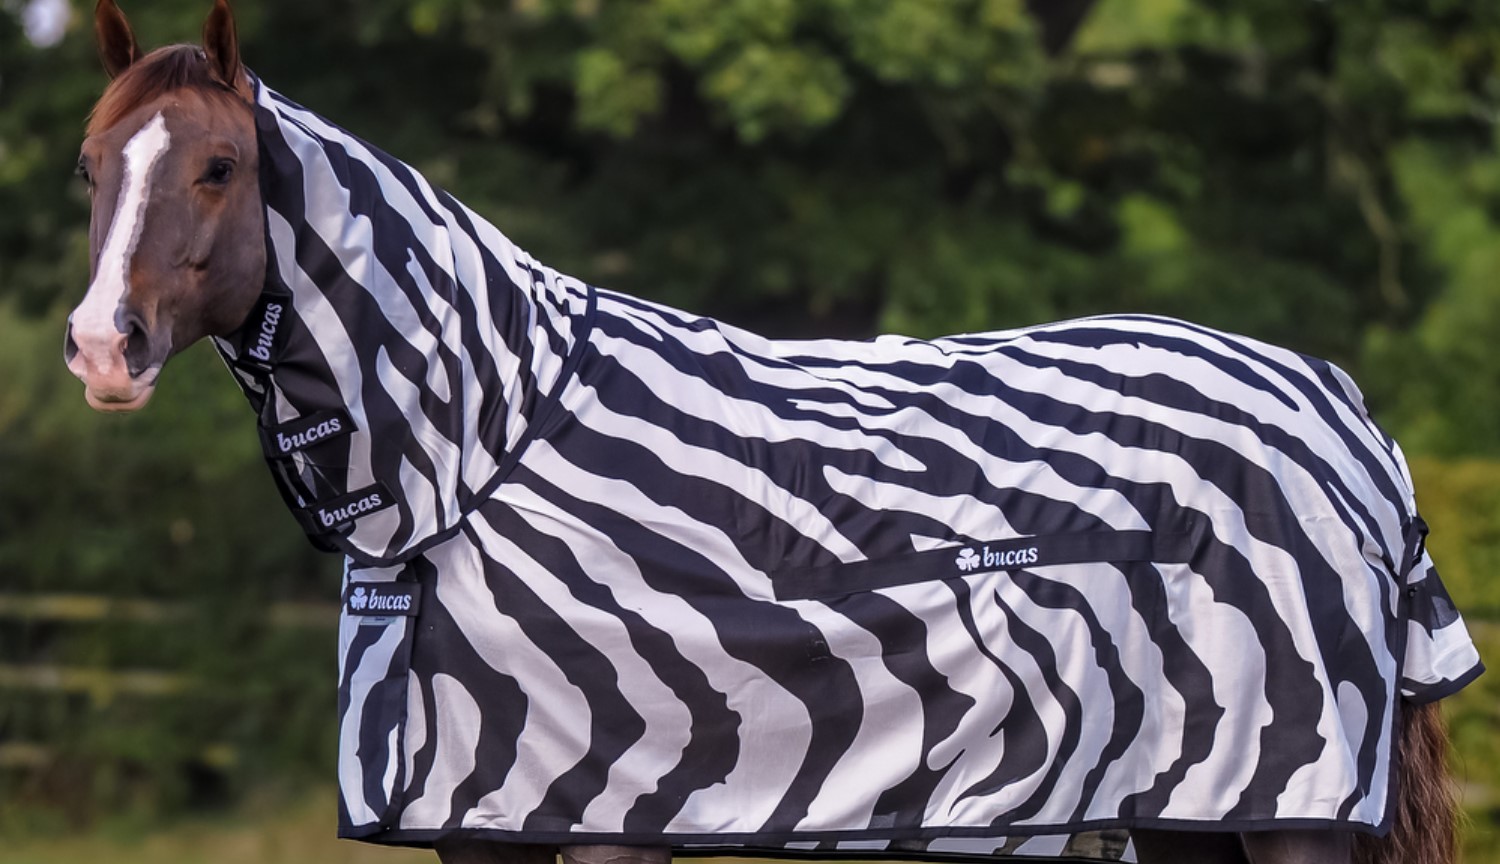 Perché gli scienziati hanno messo il costume zebra normale cavallo? In nome della scienza!